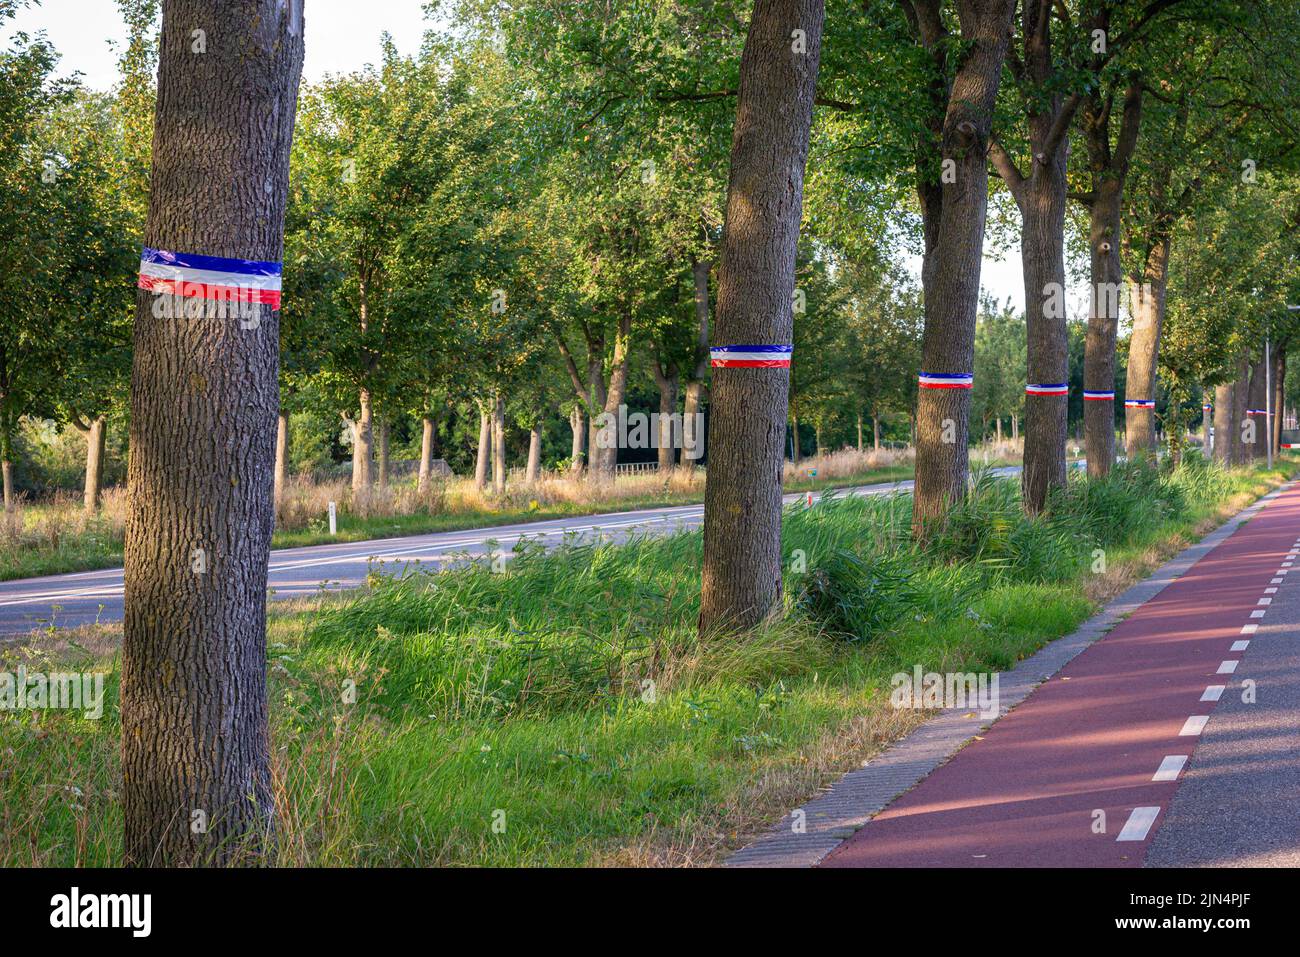 Los árboles están enyesados con los colores de la bandera holandesa invertida como señal de la protesta de los agricultores contra la política de nitrógeno del gobierno holandés. Foto de stock